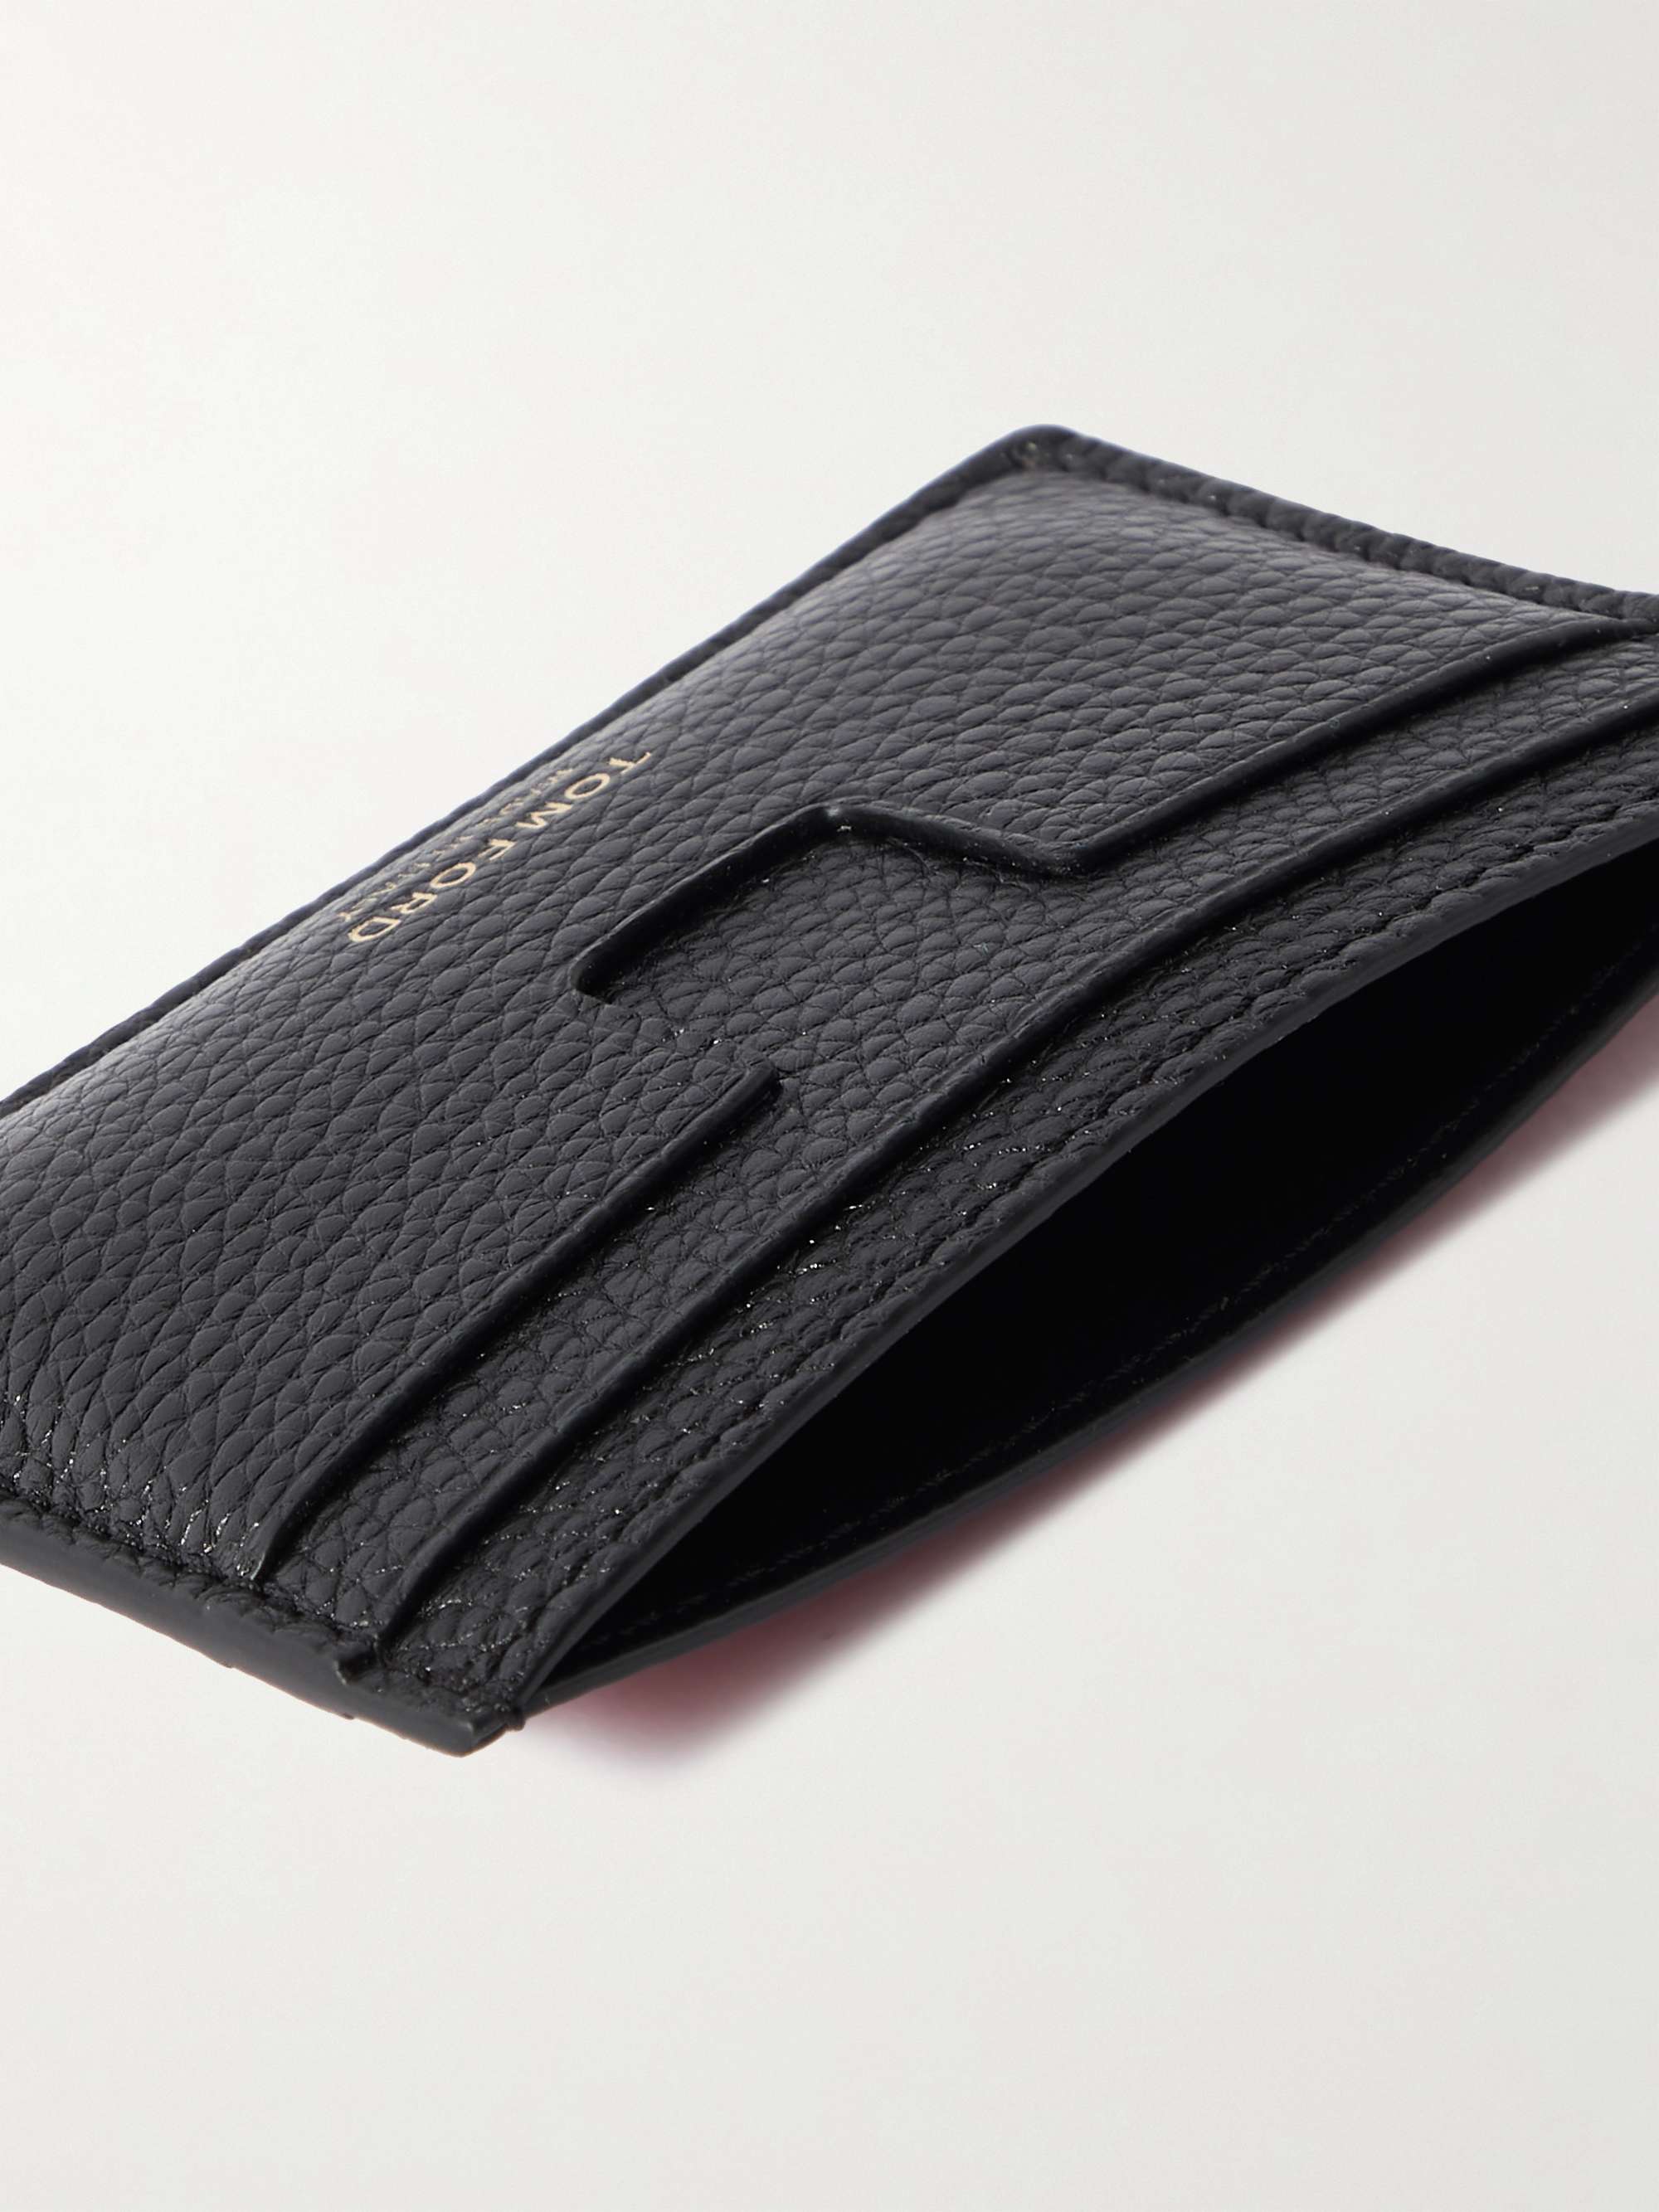 TOM FORD Colour-Block Full-Grain Leather Cardholder